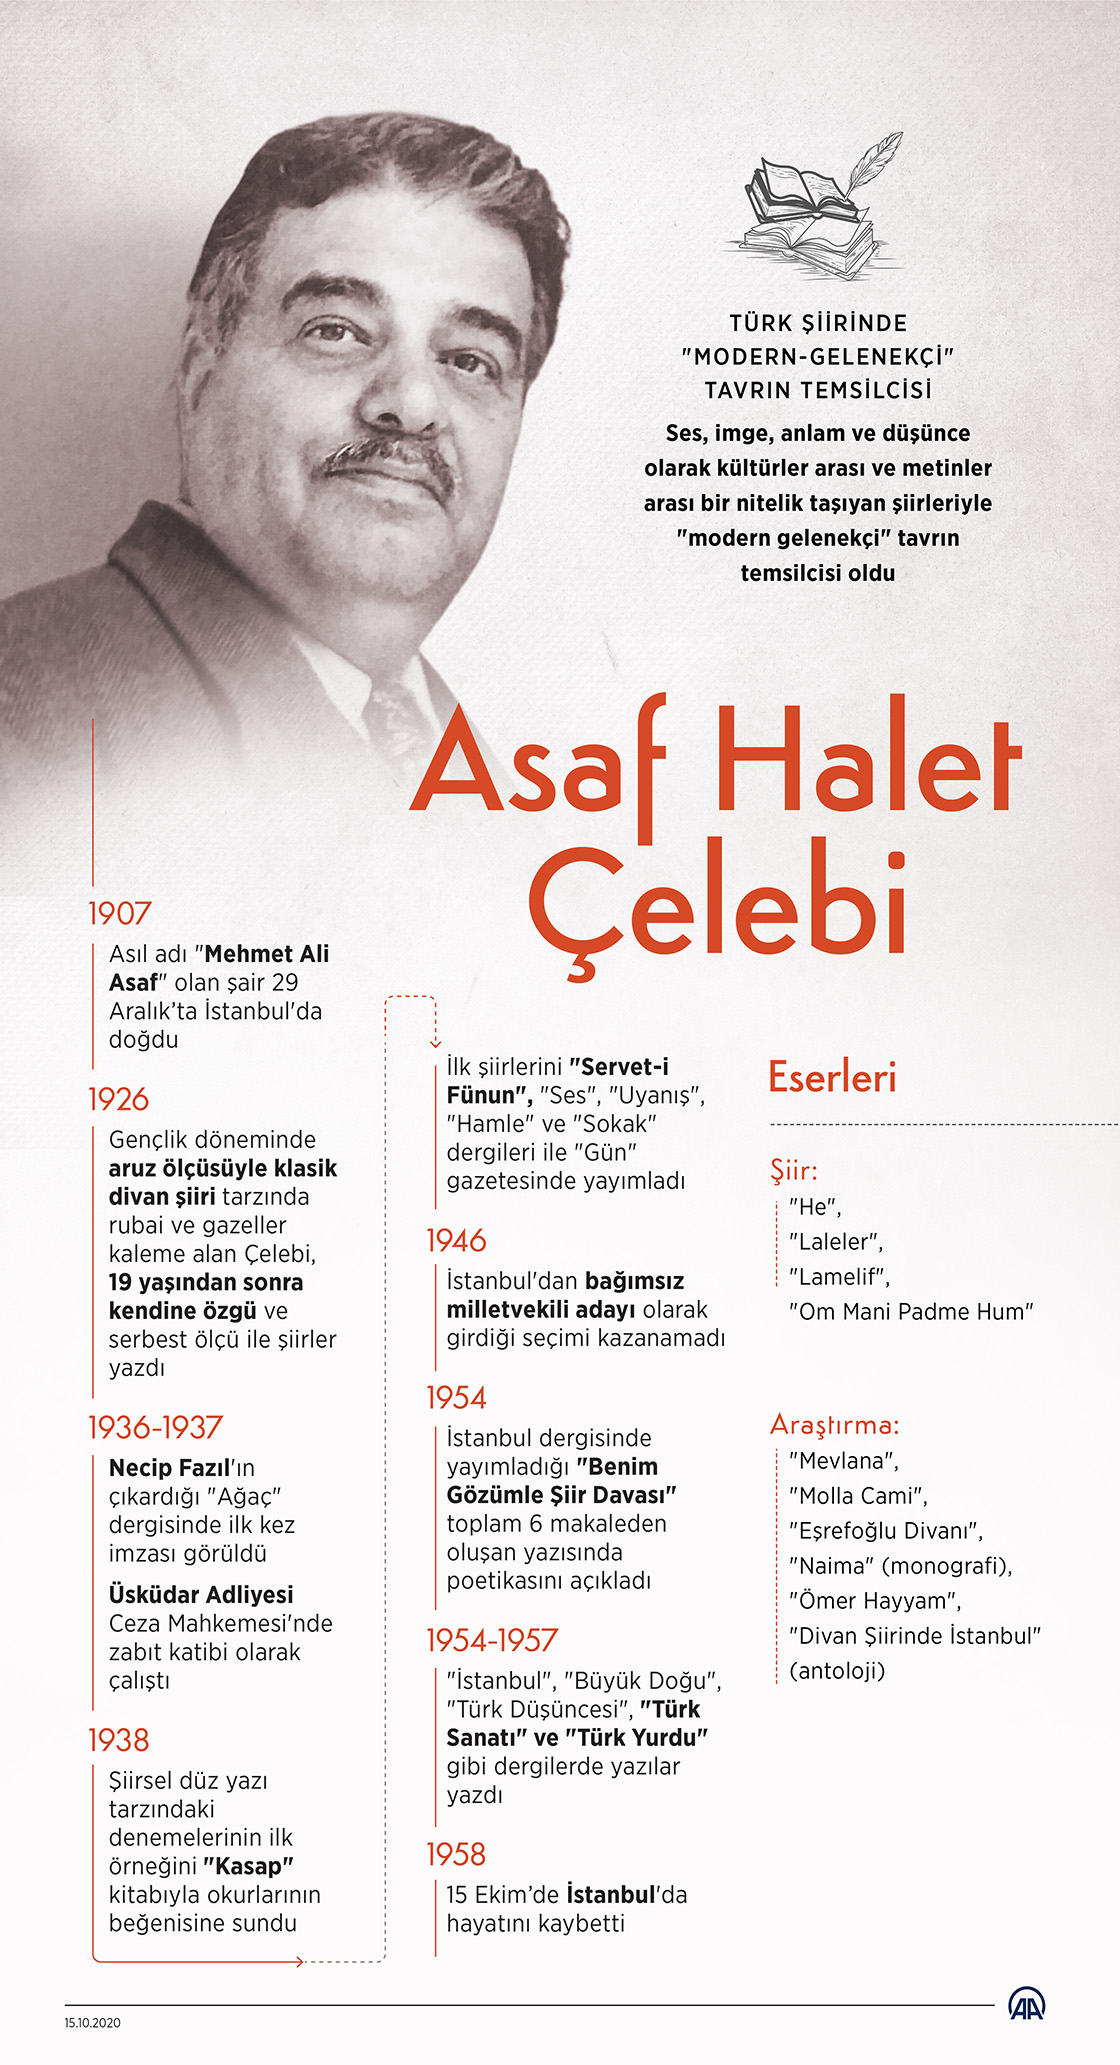 Türk şiirinde "modern-gelenekçi" tavrın temsilcisi: Asaf Halet Çelebi